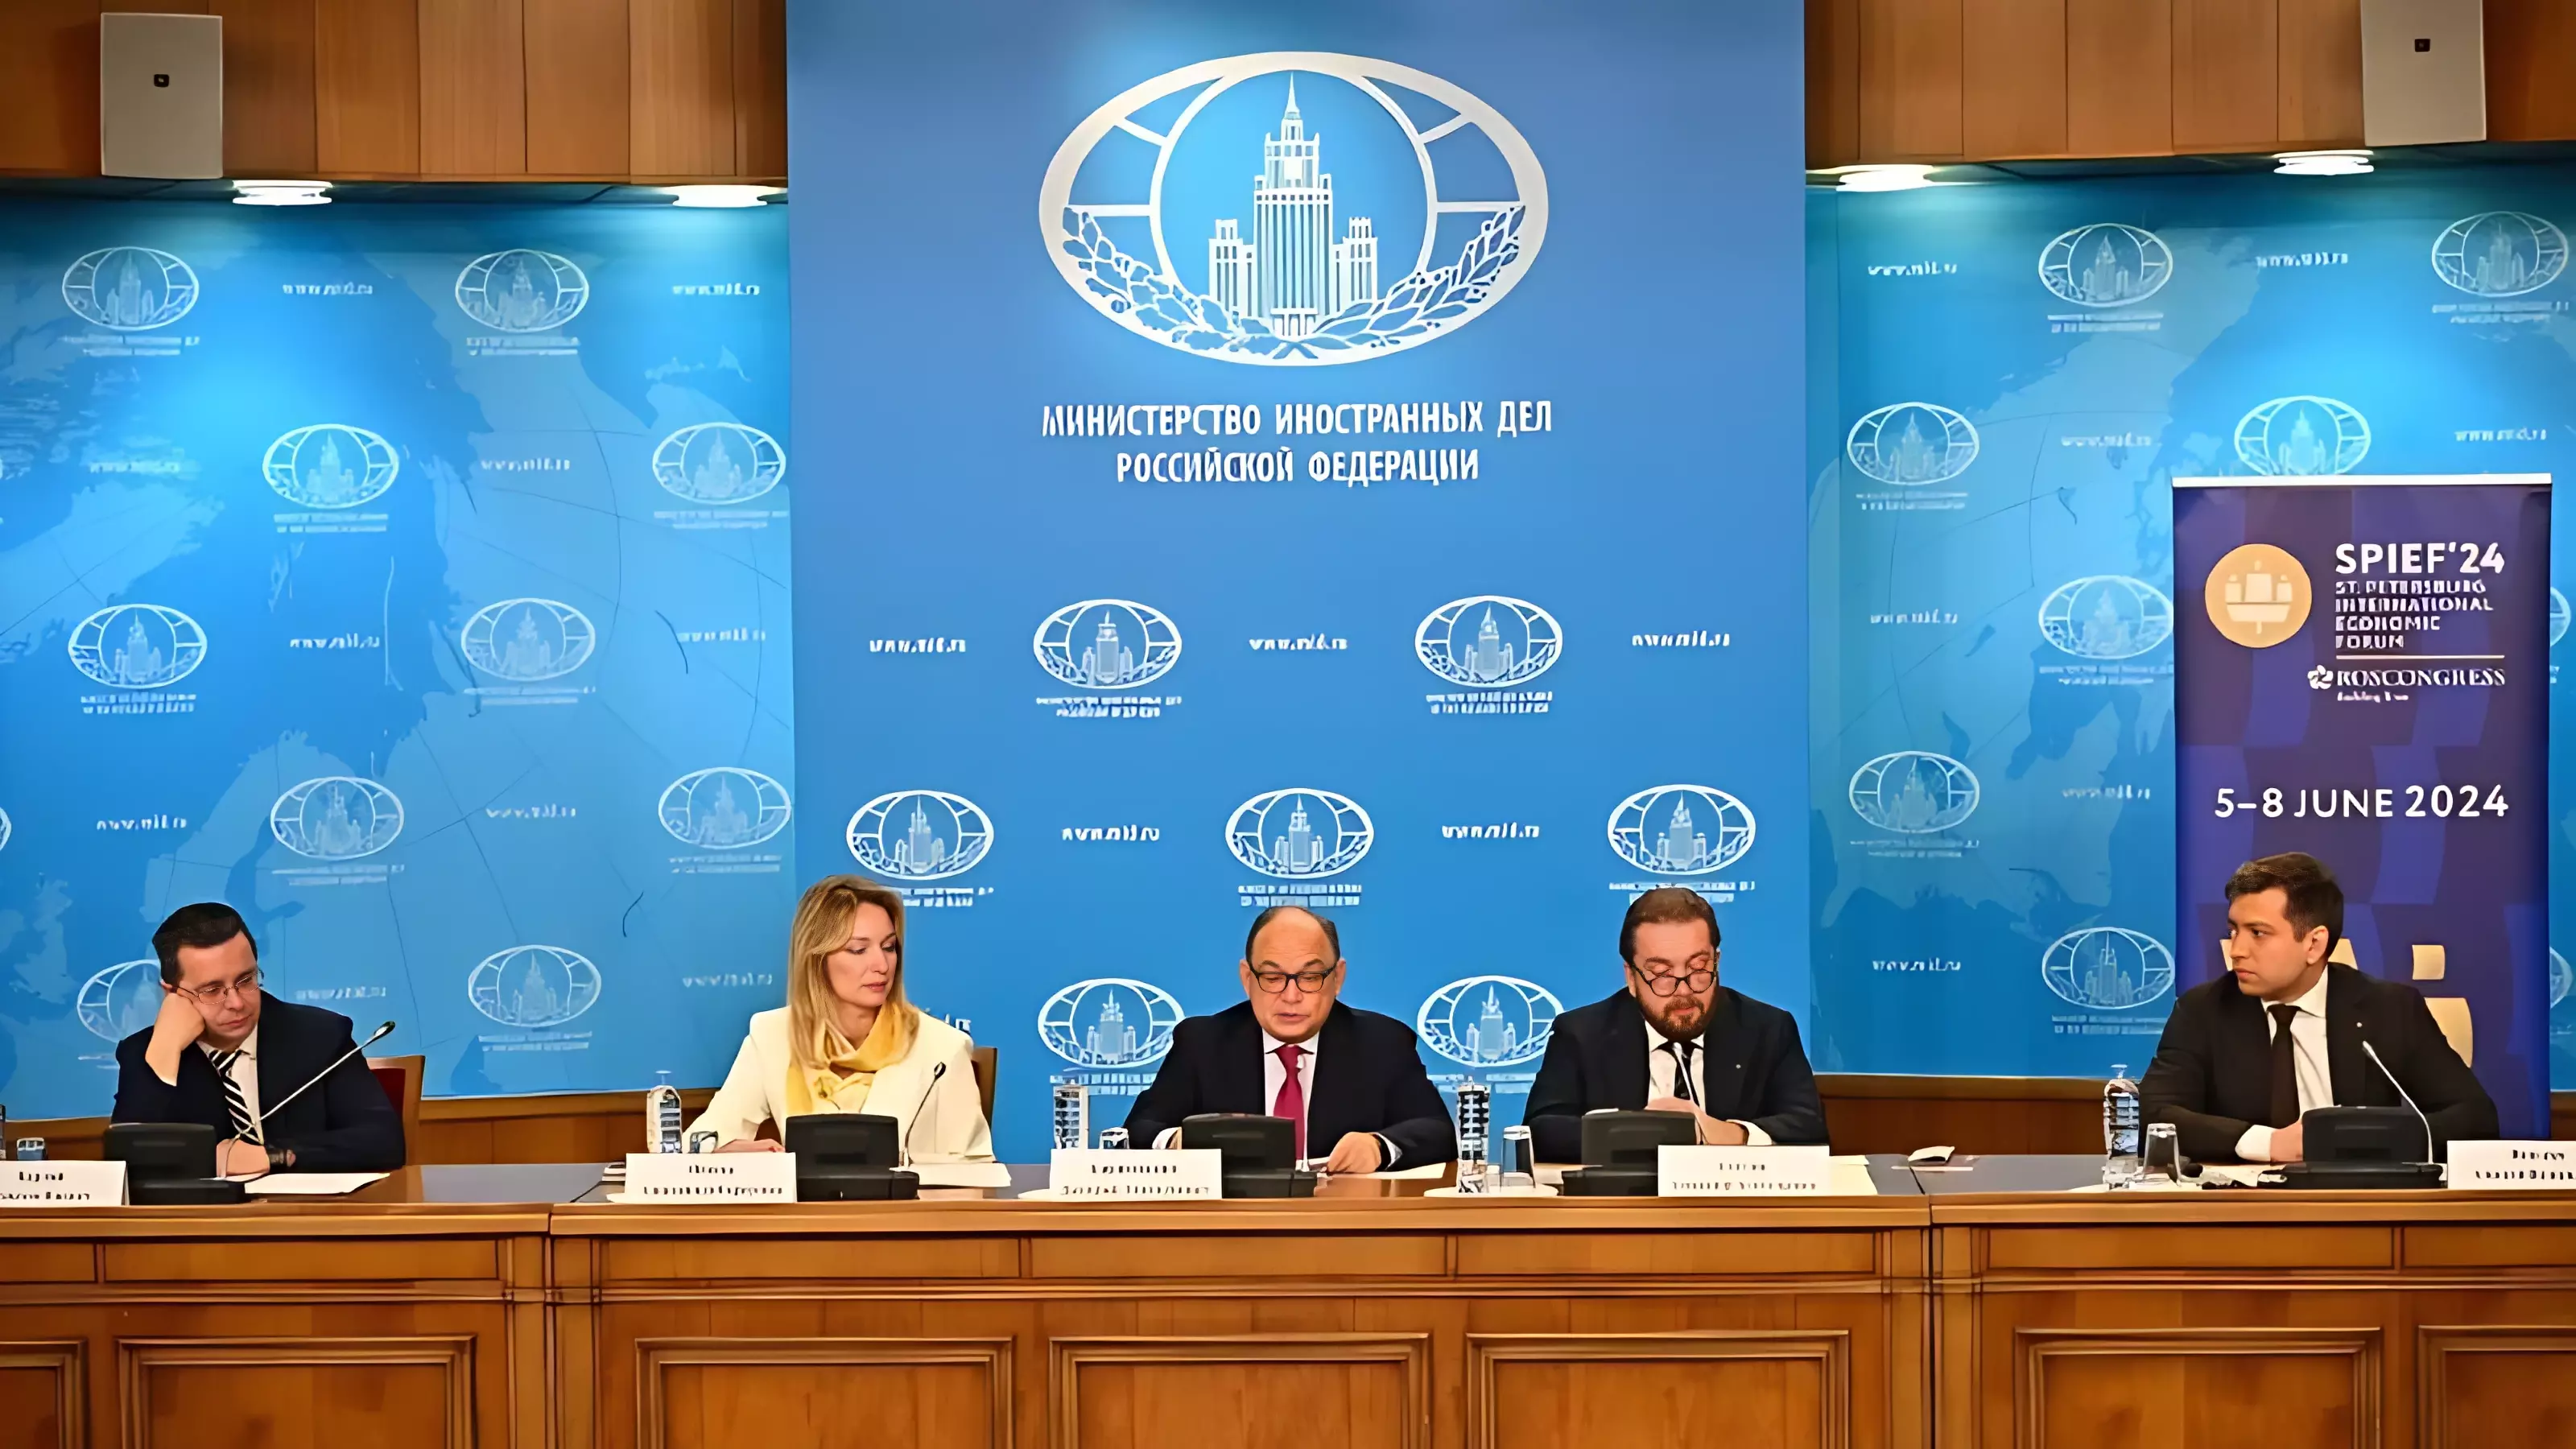 В МИД России состоялась презентация ПМЭФ-2024 для иностранных послов